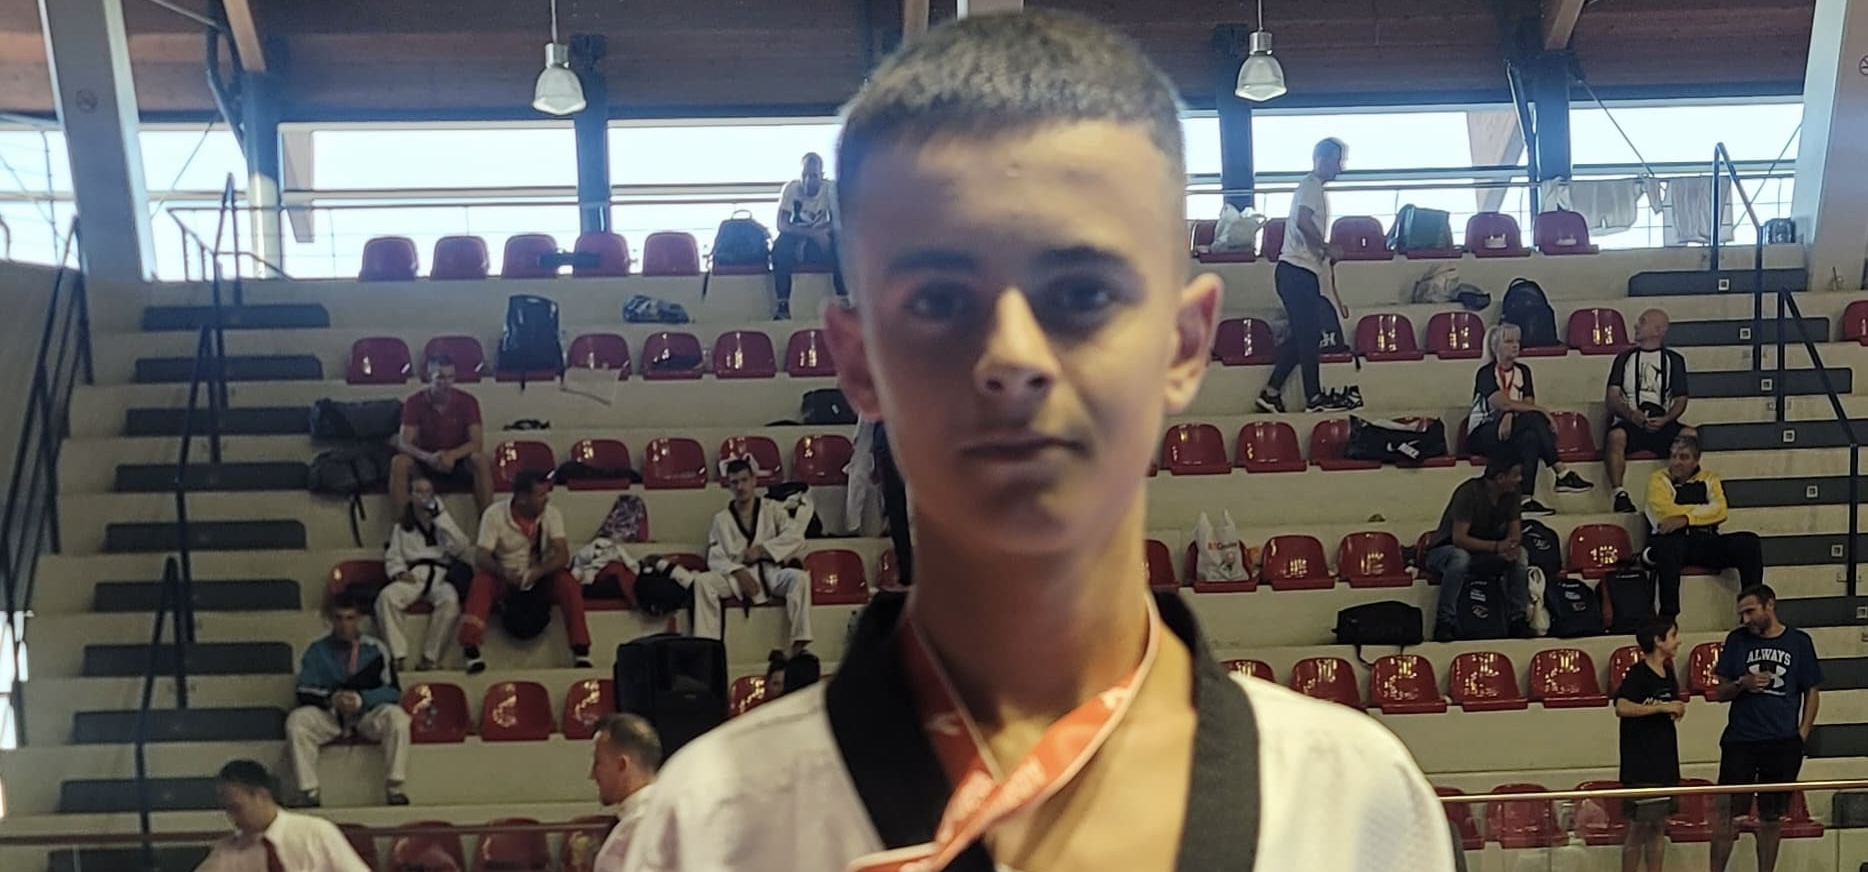 Tjetër sukses ndërkombëtar për sportistët nga Durrësi, 15-vjeçari “rrëmben” një medalje të bronztë